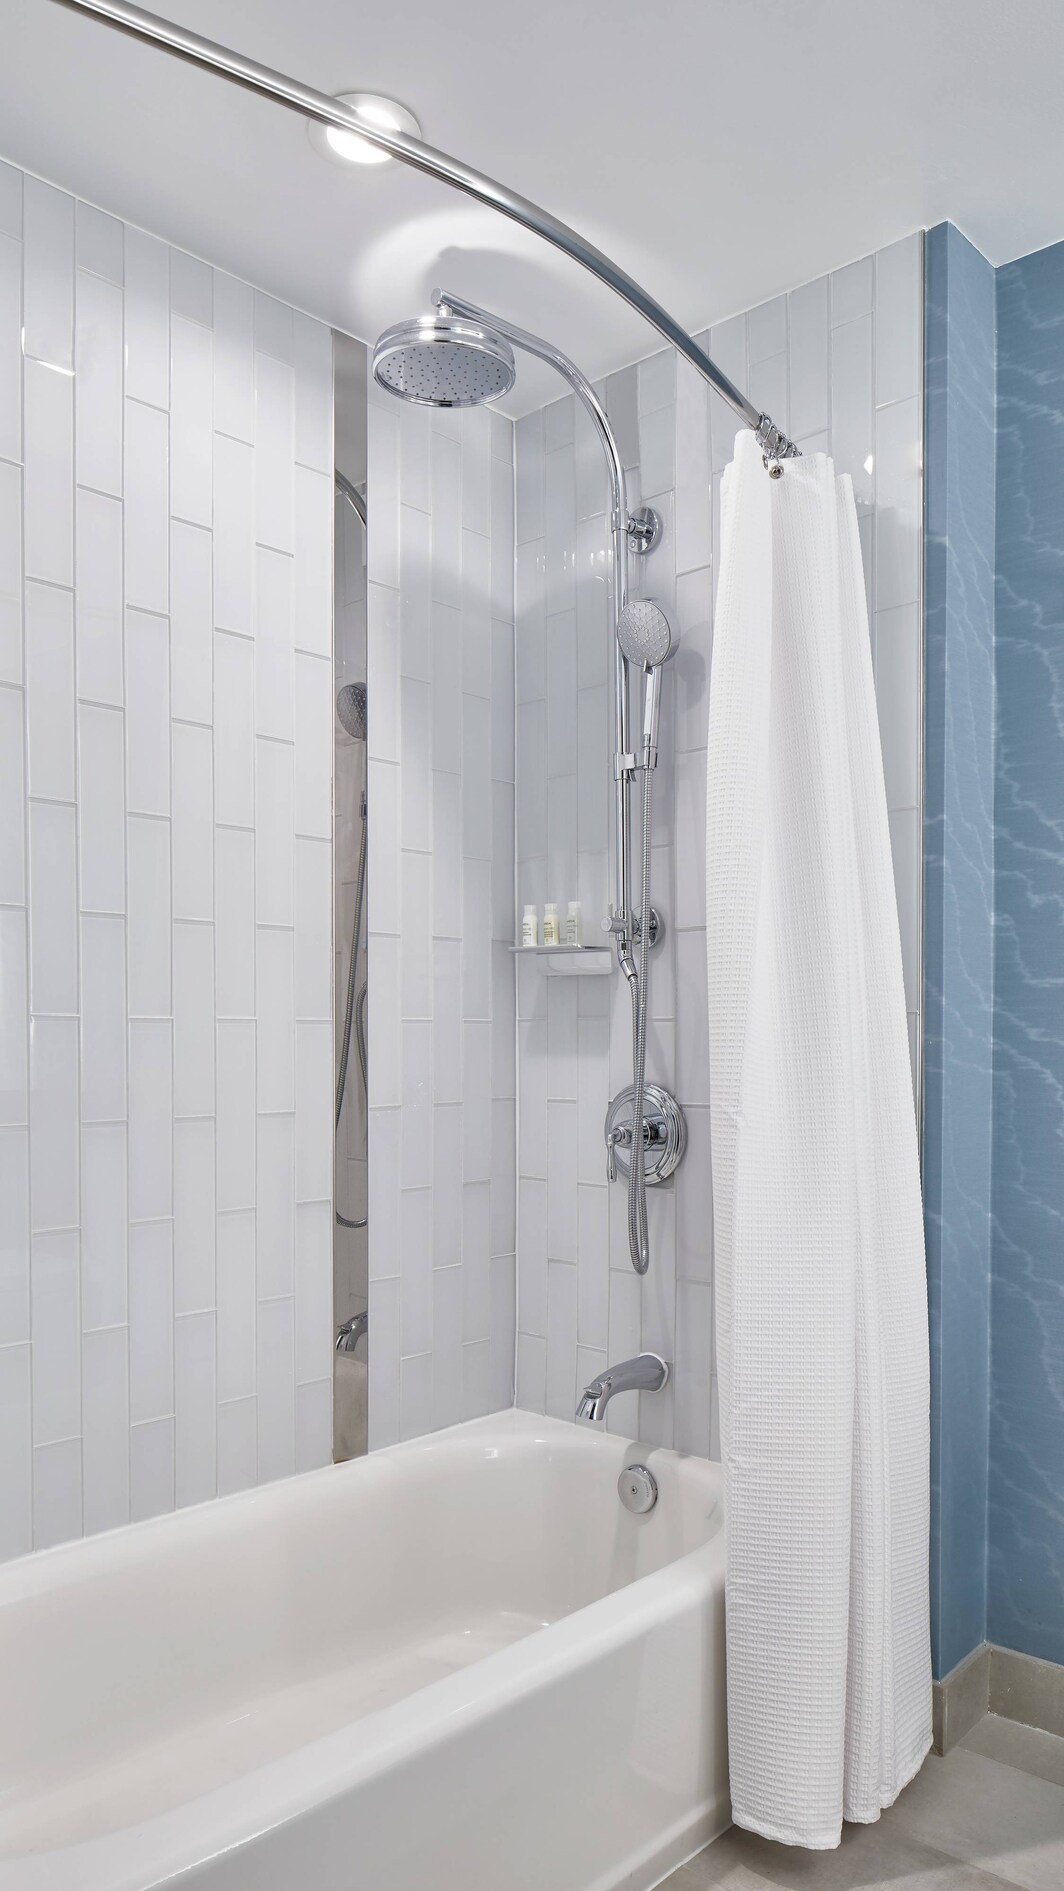 Banheiro do quarto - Banheira e chuveiro